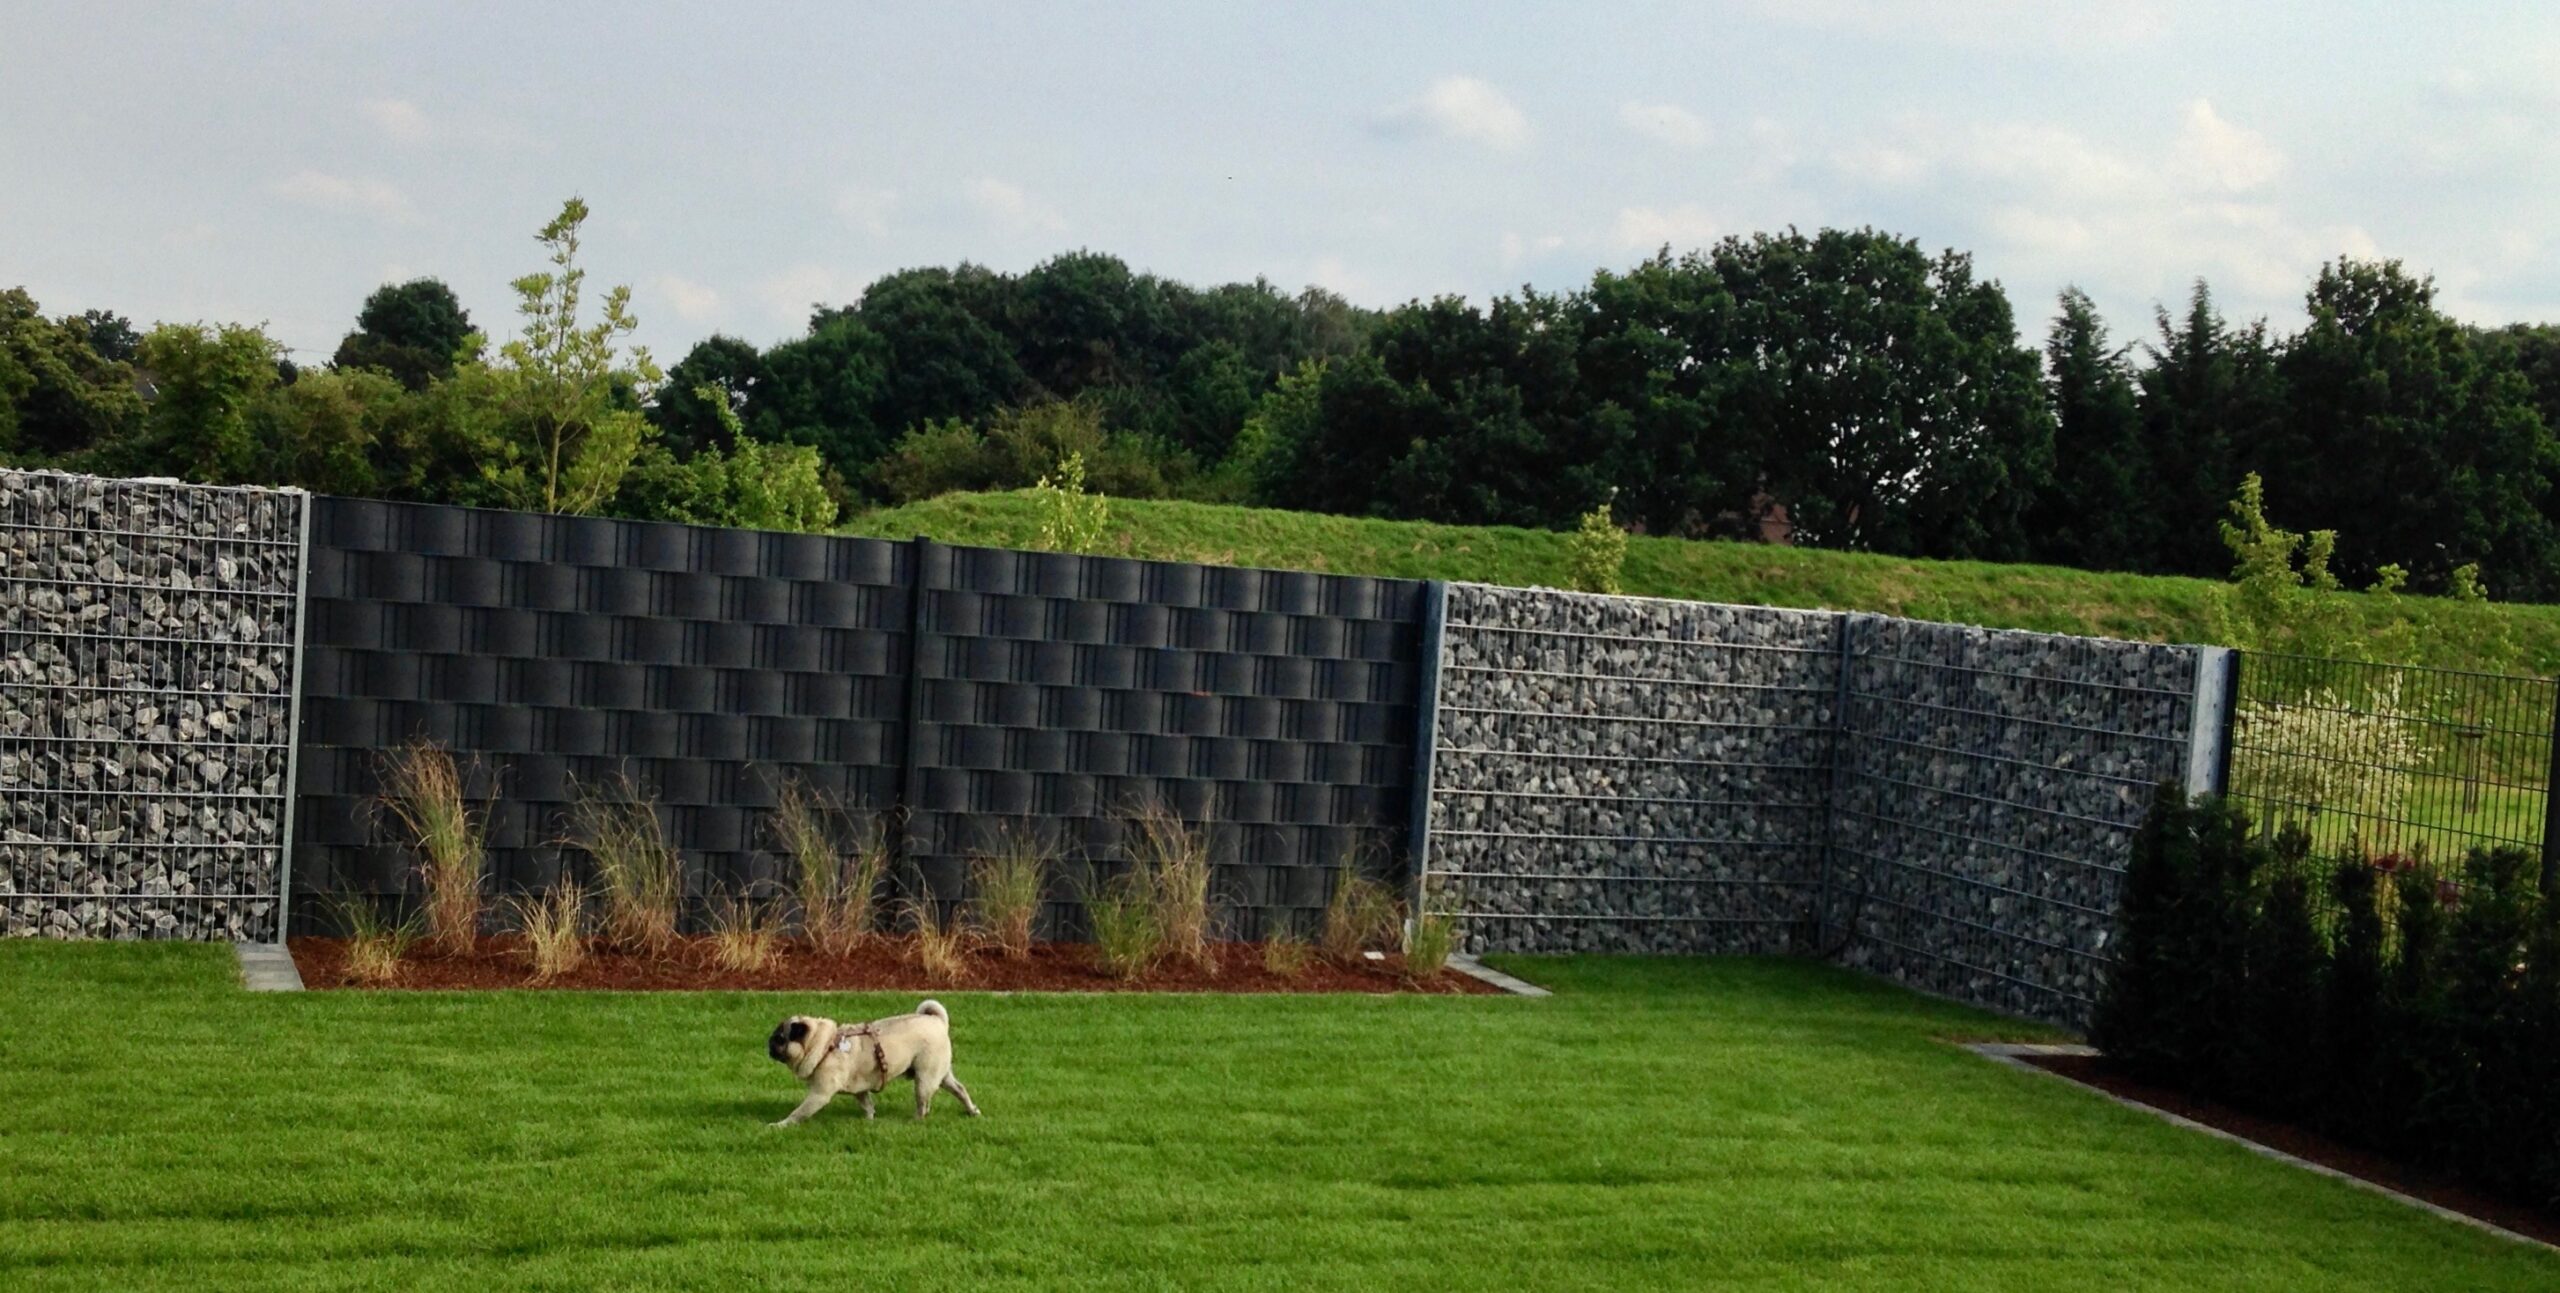 Gabionenzaun mit Blick in den Garten. Im Vordergrund ist ein kleiner Hund zu sehen.